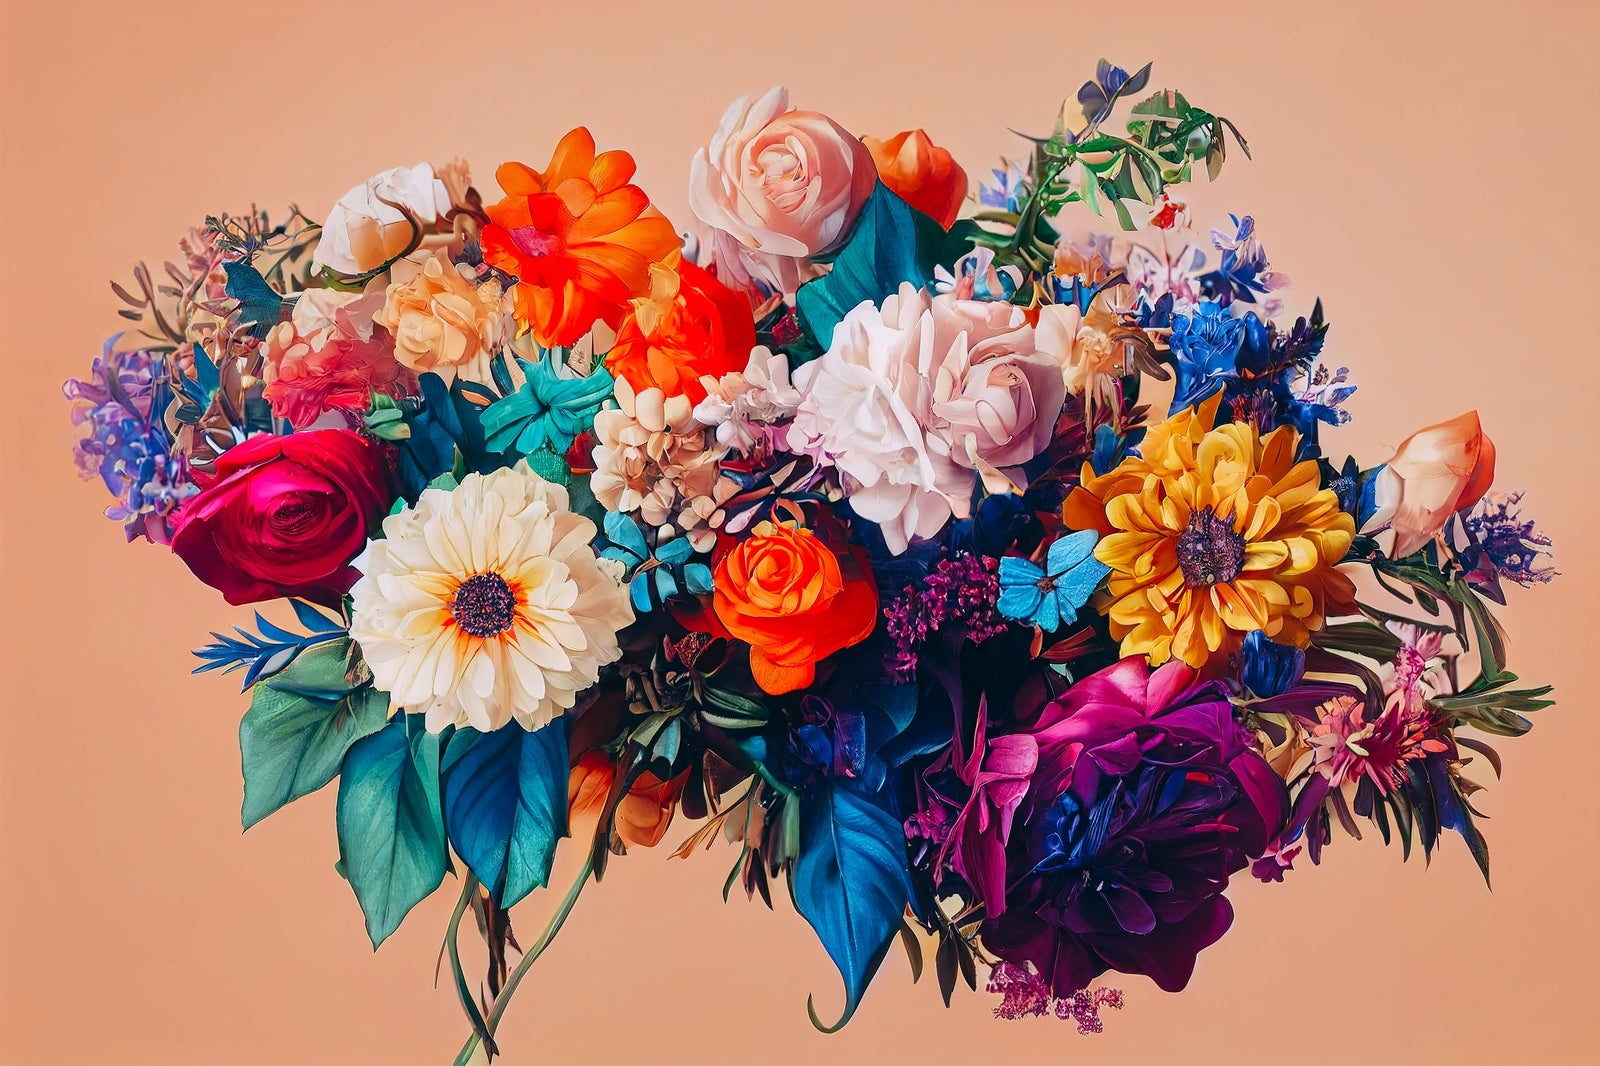 「鮮やかな花のブーケ」の写真